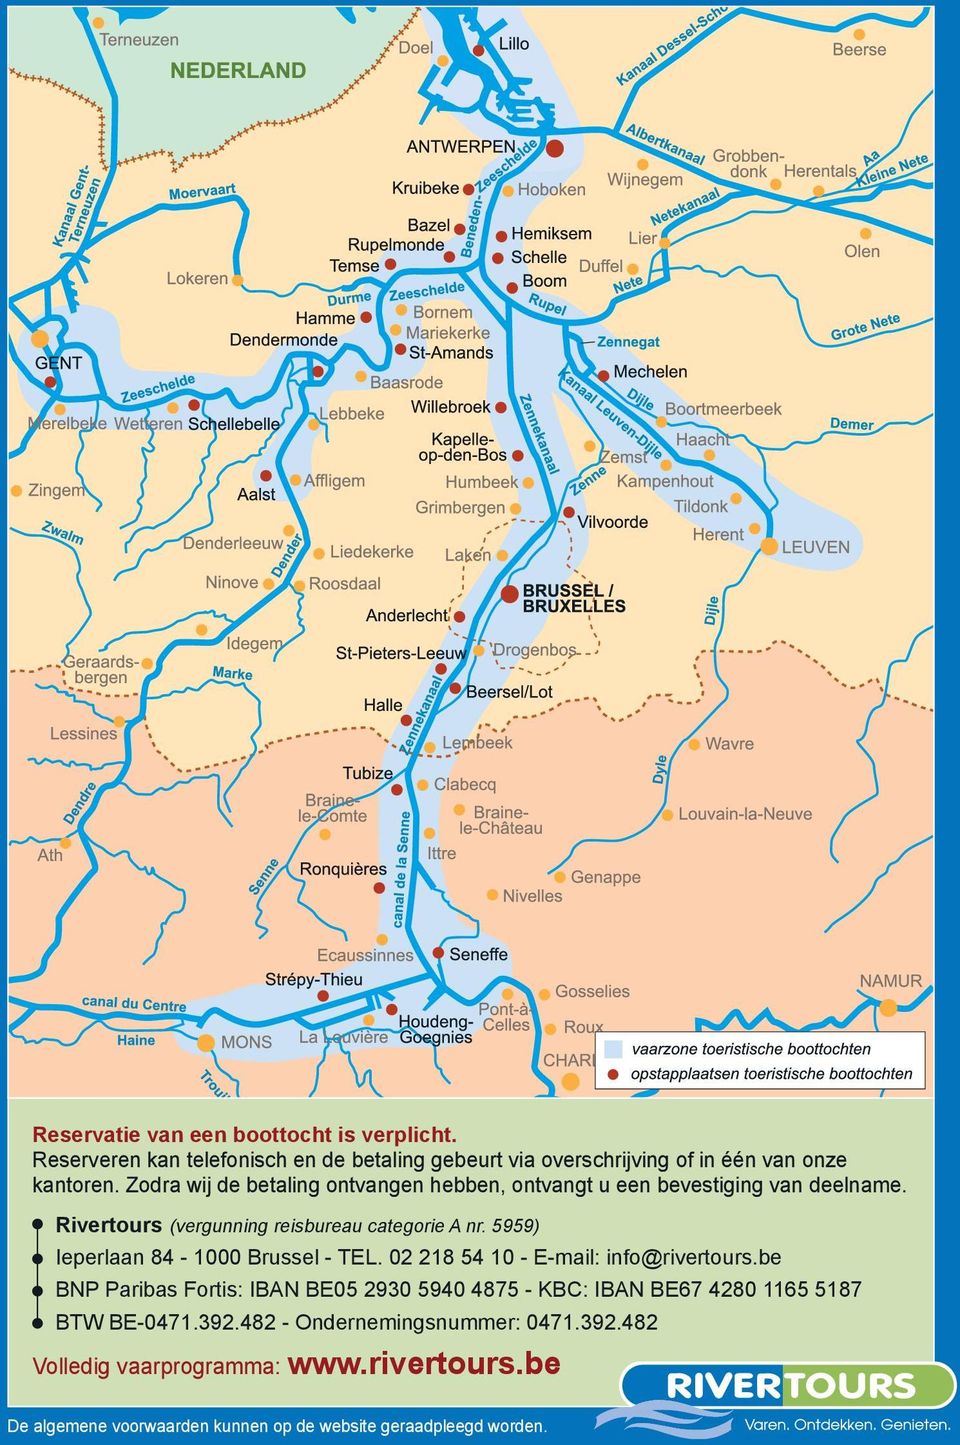 5959) Ieperlaan 84-1000 Brussel - TEL. 02 218 54 10 - E-mail: info@rivertours.